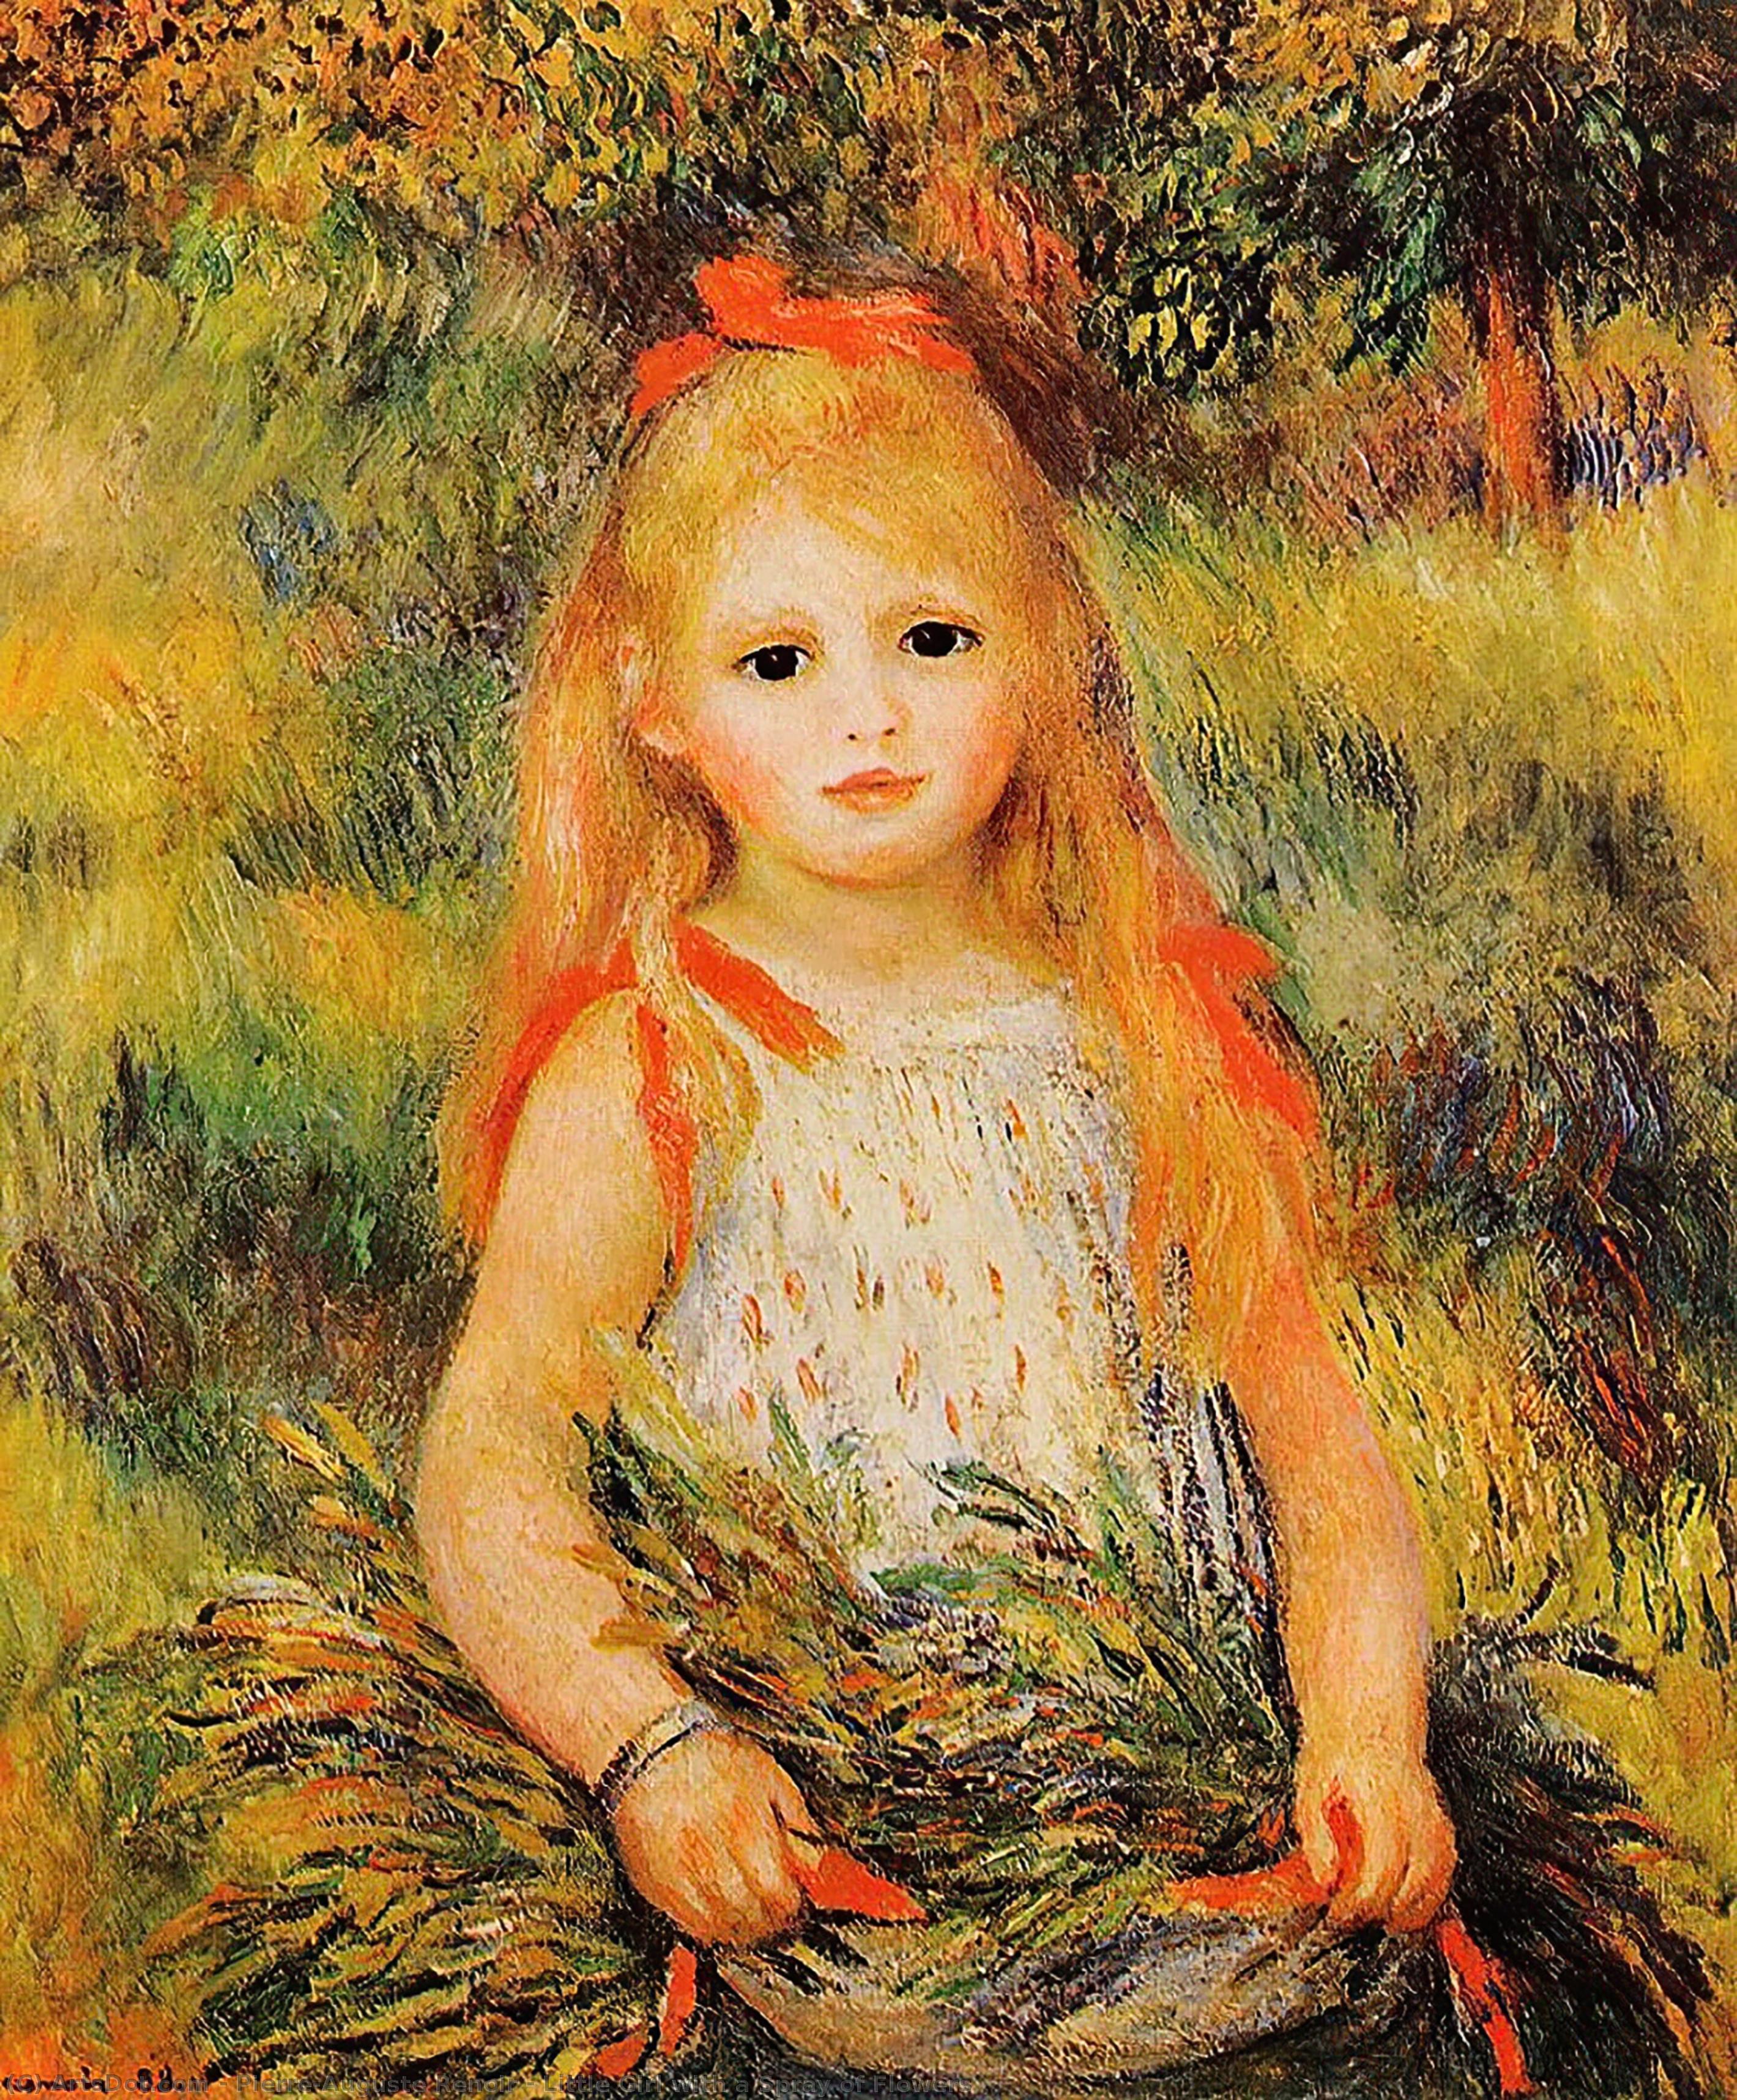 Comprar Reproducciones De Arte Del Museo Pequeña chica con un rayo de flores, 1888 de Pierre-Auguste Renoir (1841-1919, France) | ArtsDot.com